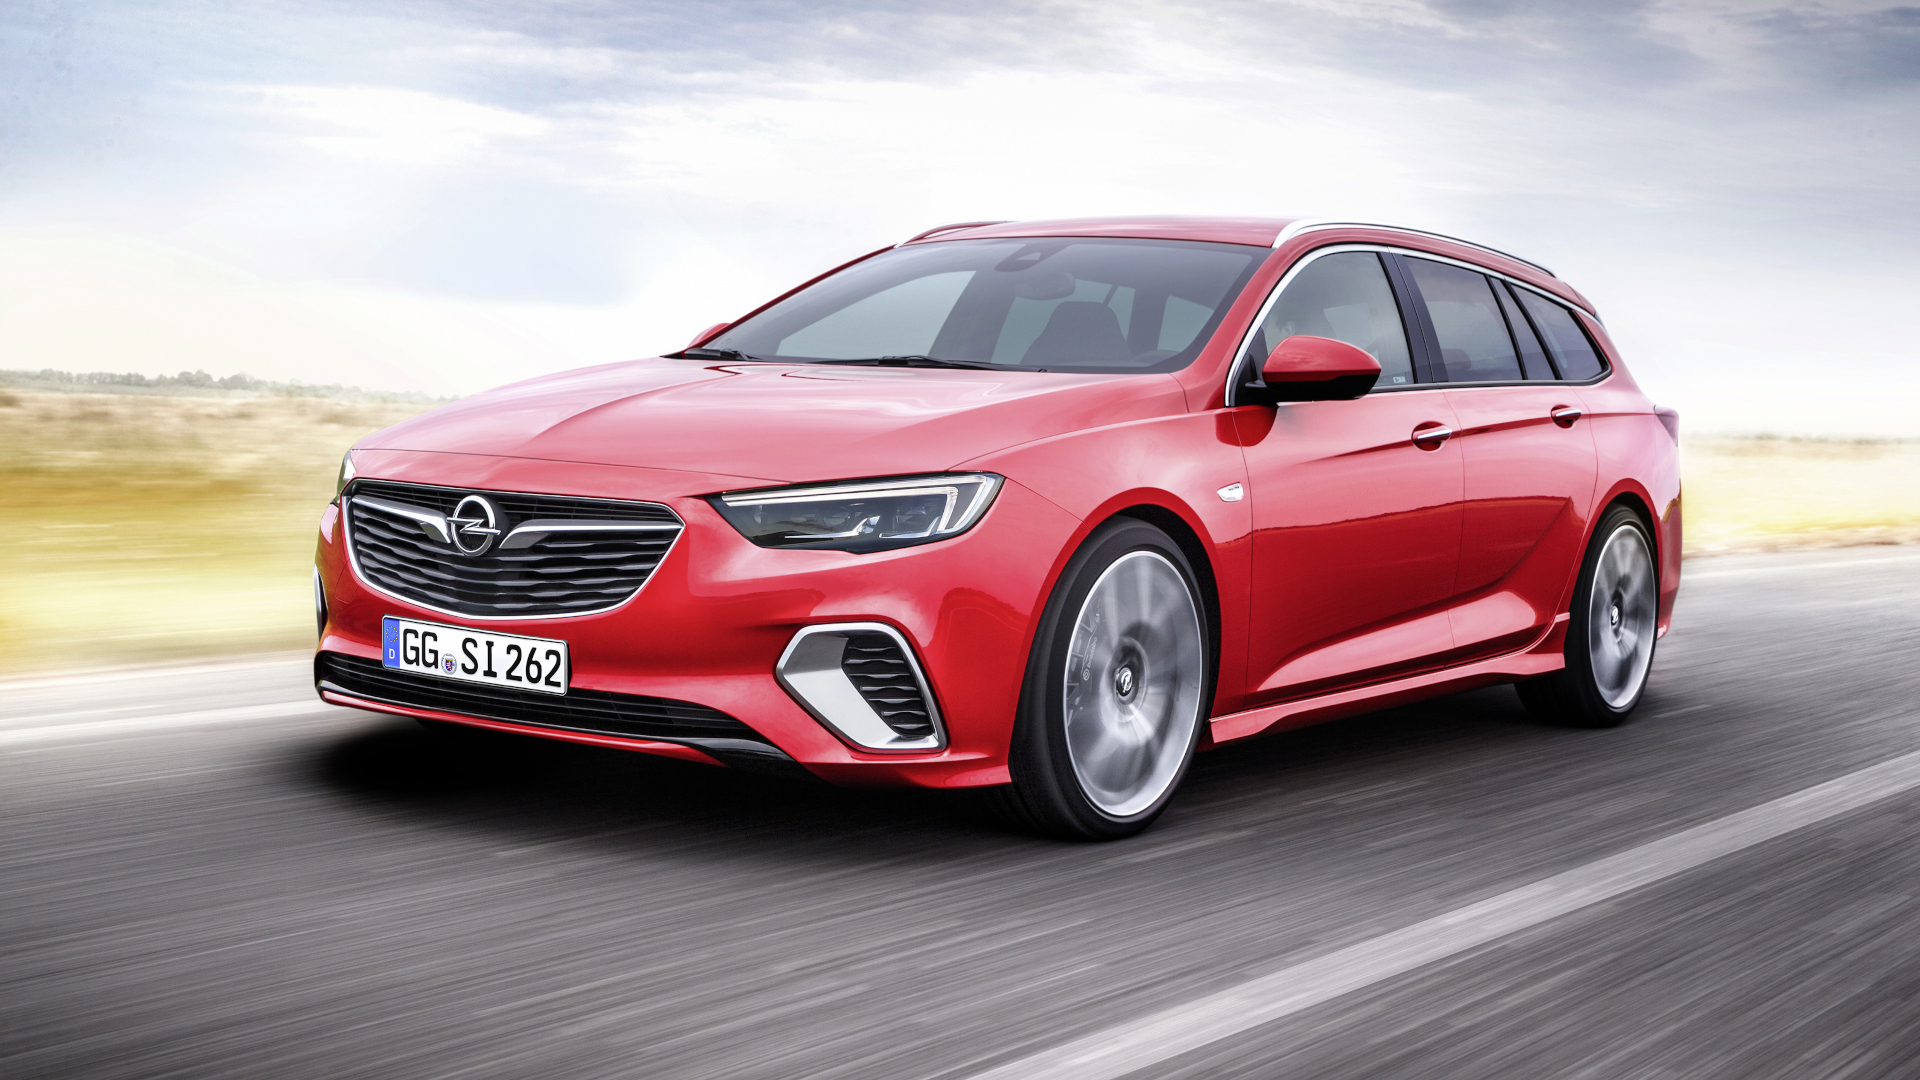 Opel Insignia B 2017: Preise und Ausstattung